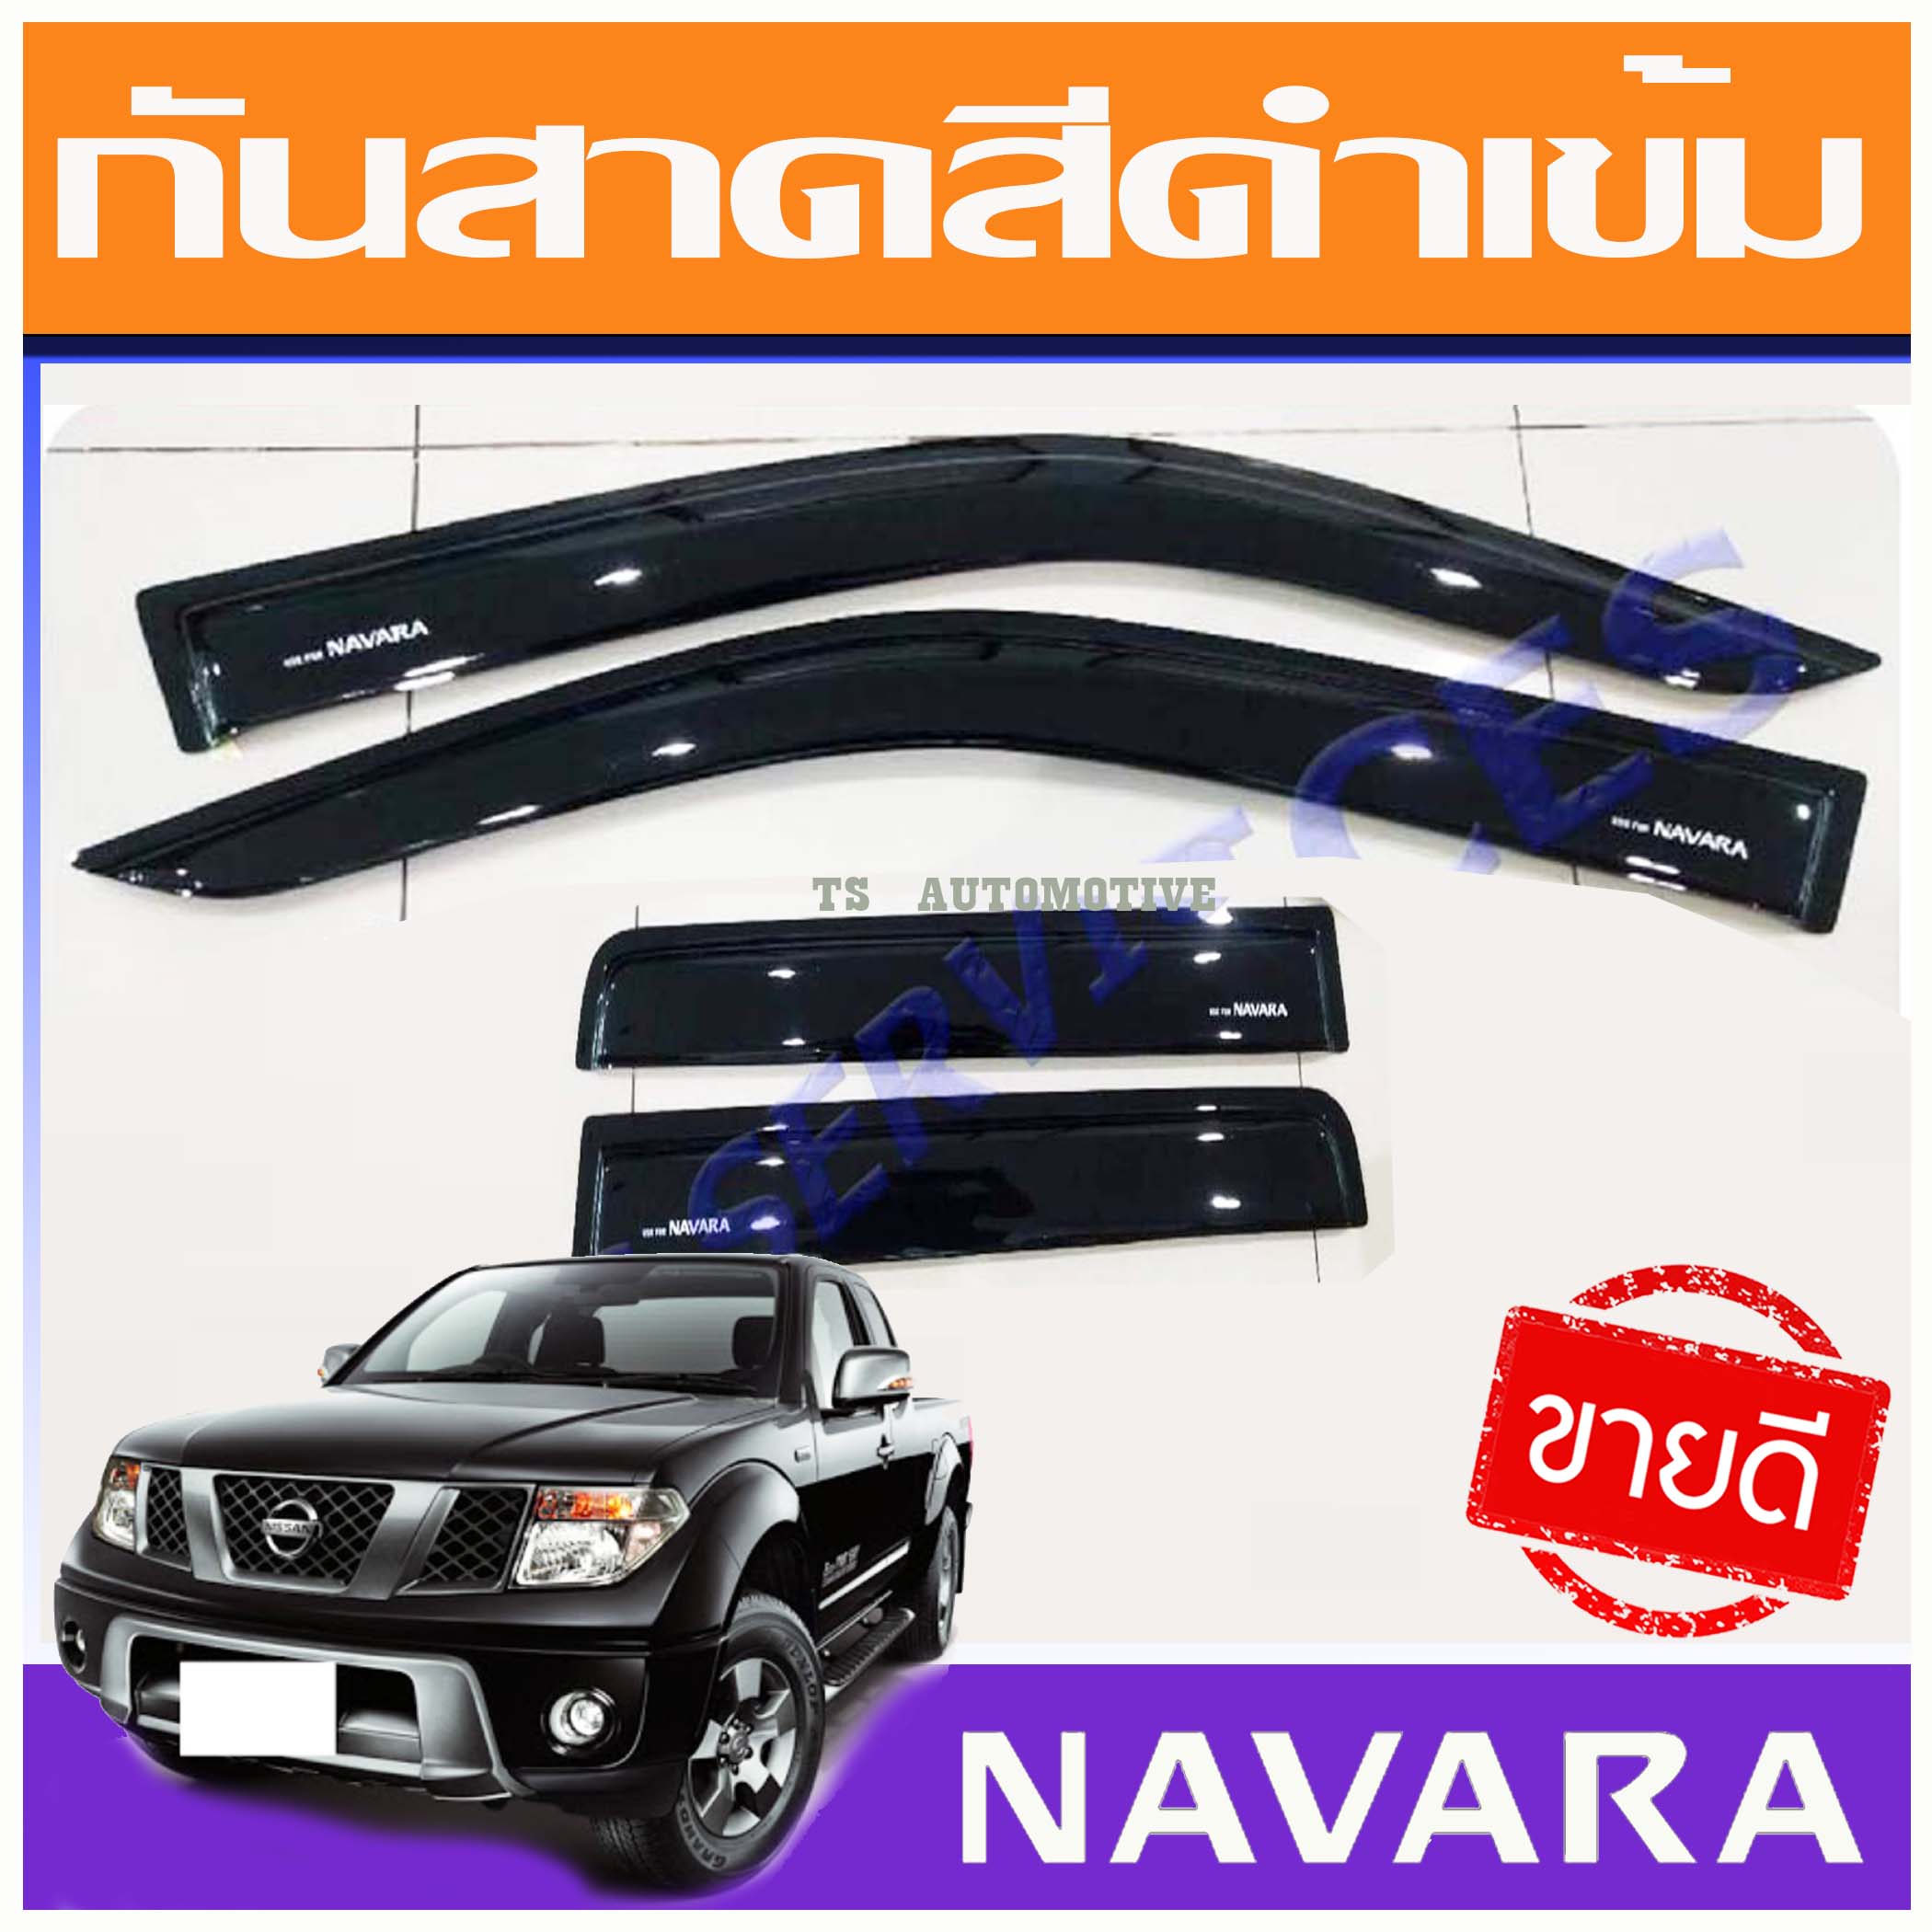 คิ้วกันสาด กันสาดประตู (Side Visor) สีดำสำหรับรถนิสสัน นาวาร่า (Nissan Navara) ปี 2007 - 2013 2ประตูแคป